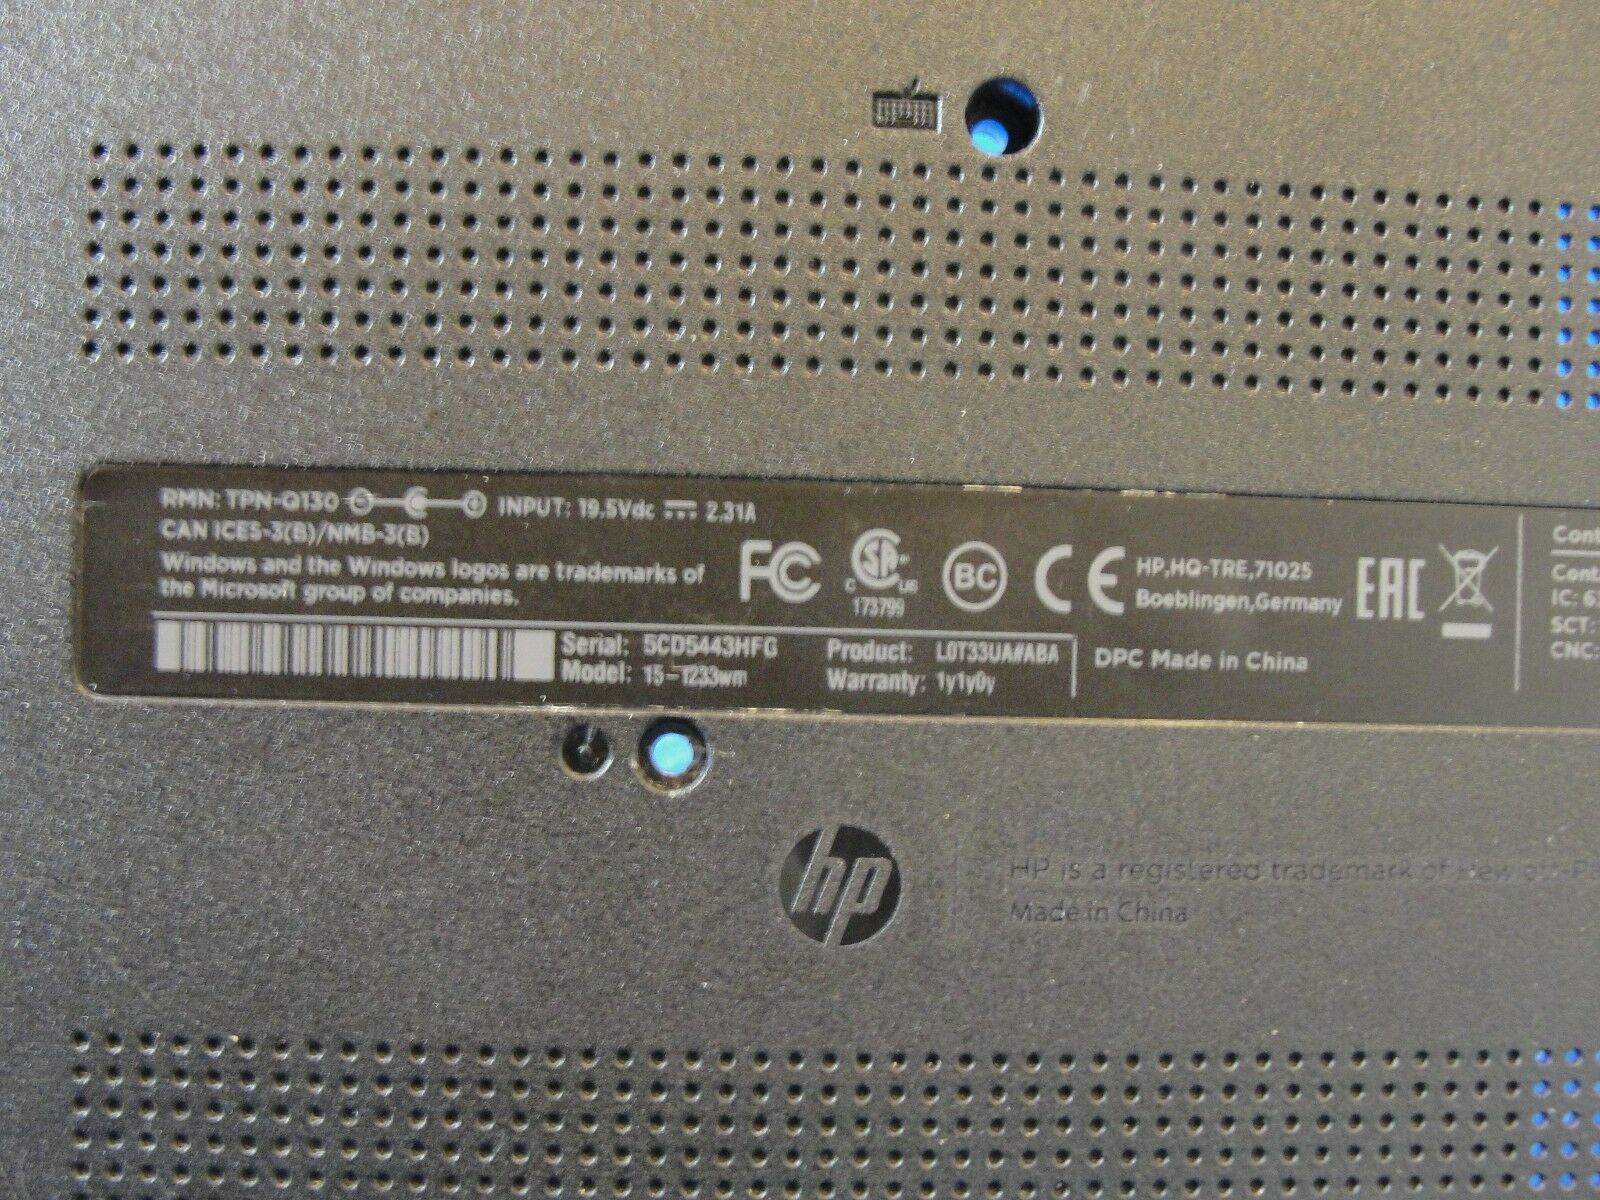 HP 15-f233wm 15.6